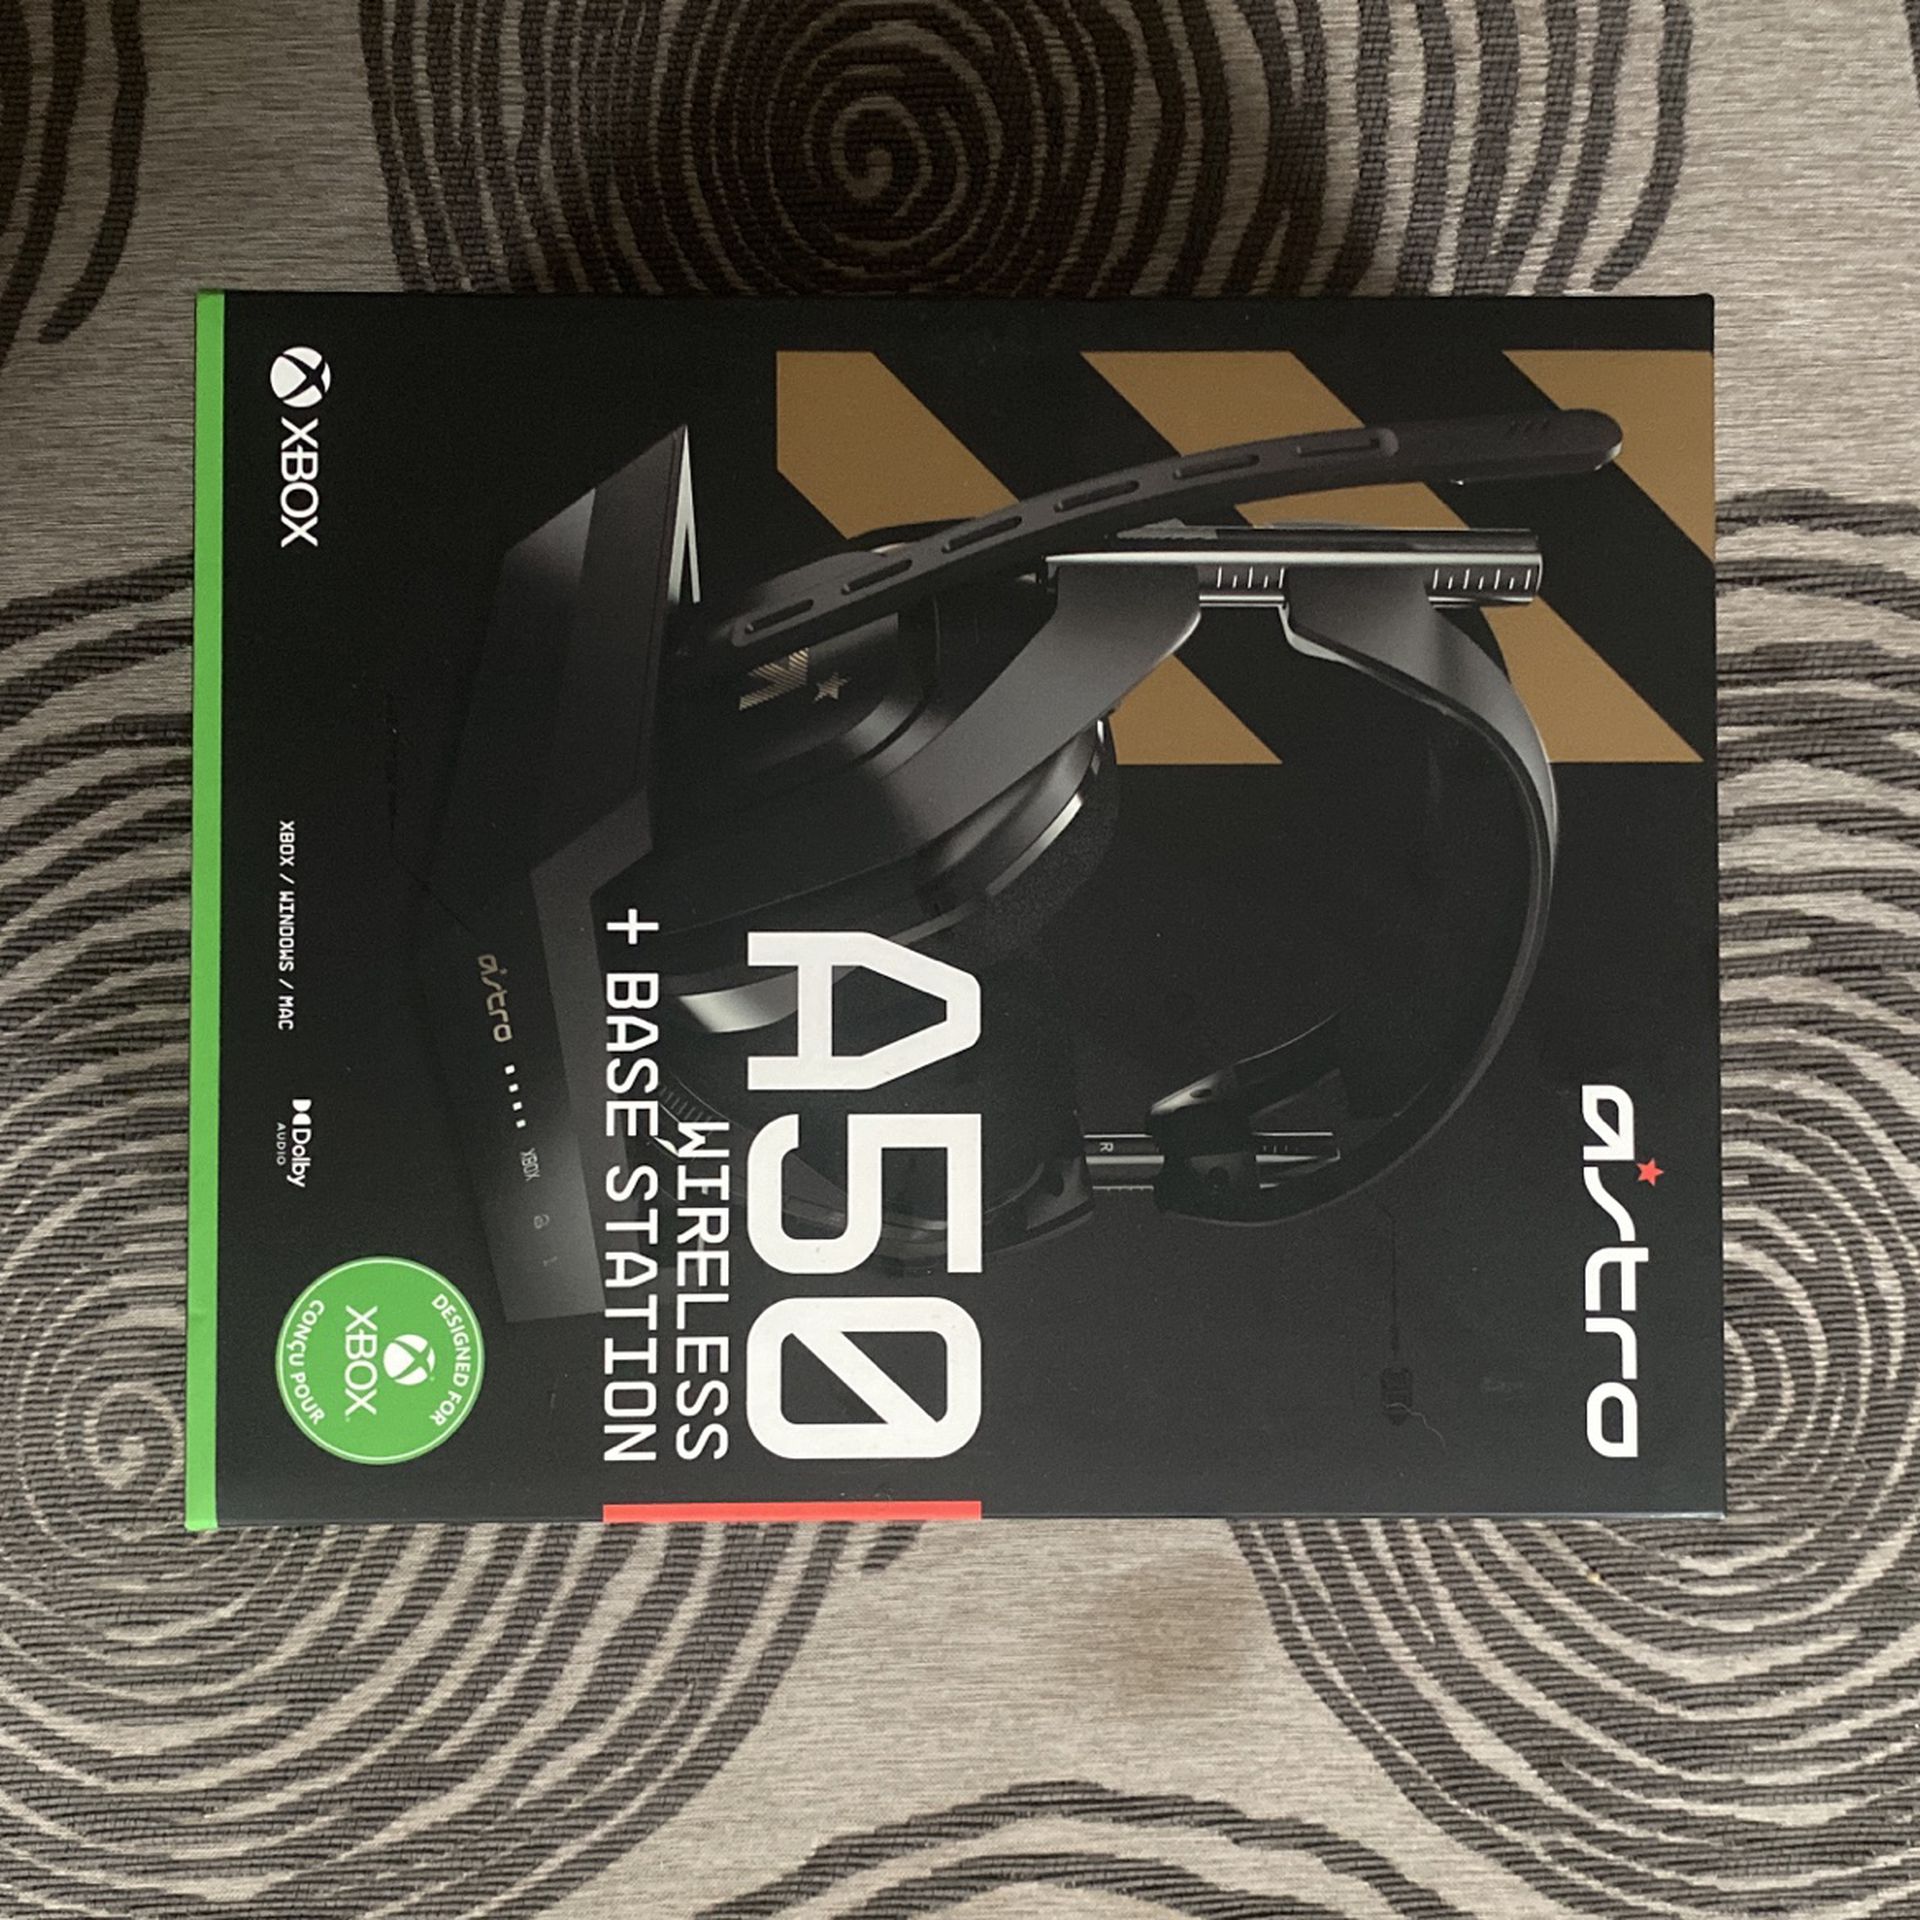 Astro A50 Wireless (Xbox One/PC)